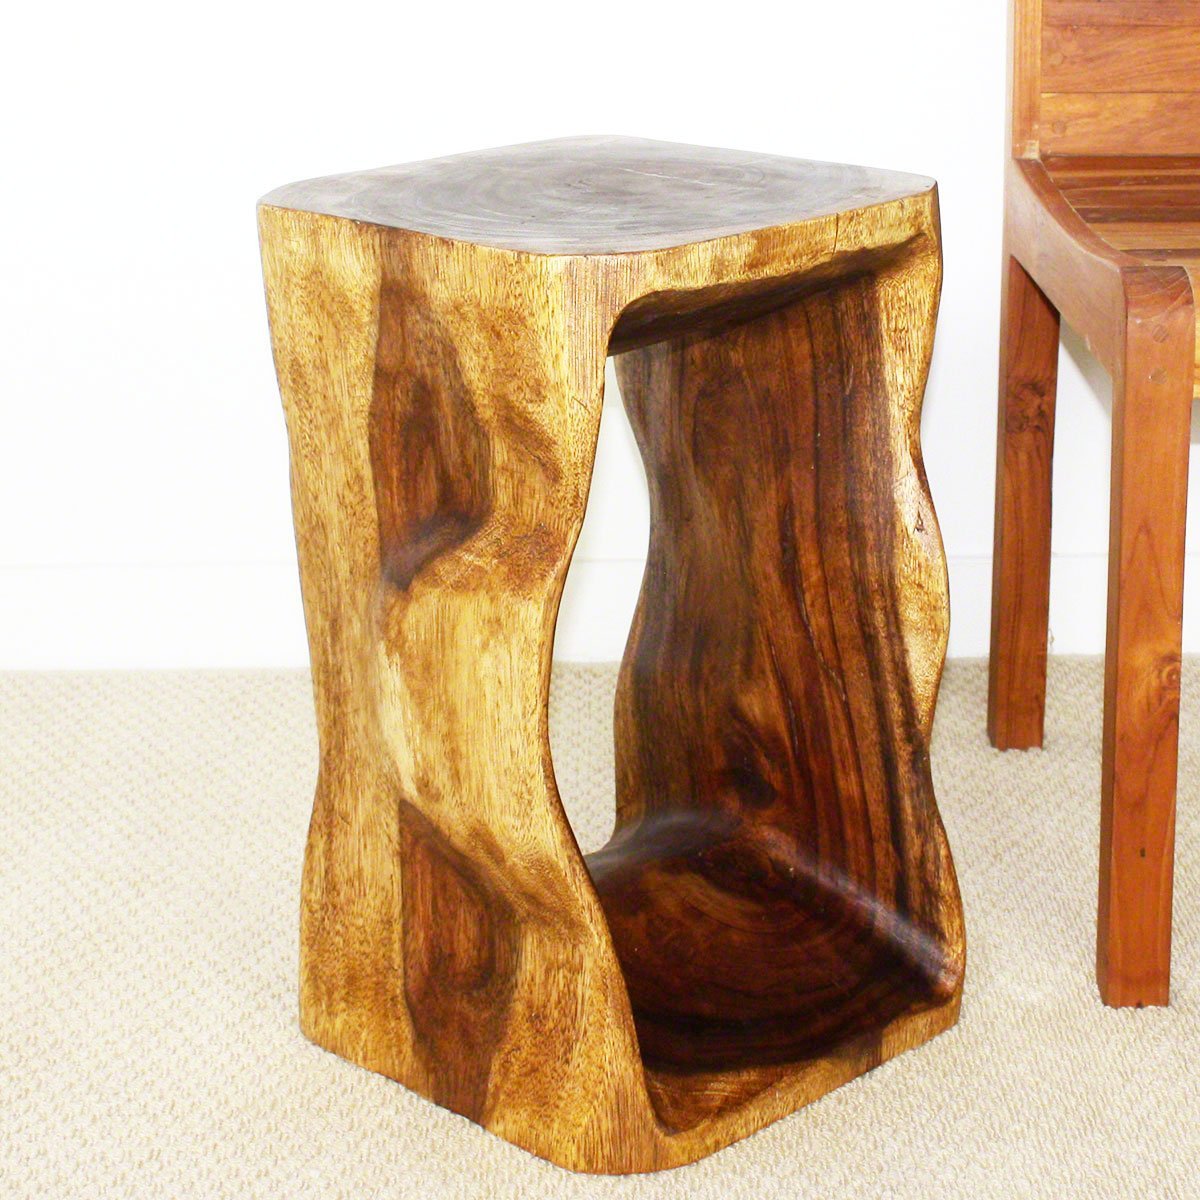 Haussmann® Wood Natural Stool End Table 12 In Sq X 20 In High Walnut Oil - Haussmann Inc